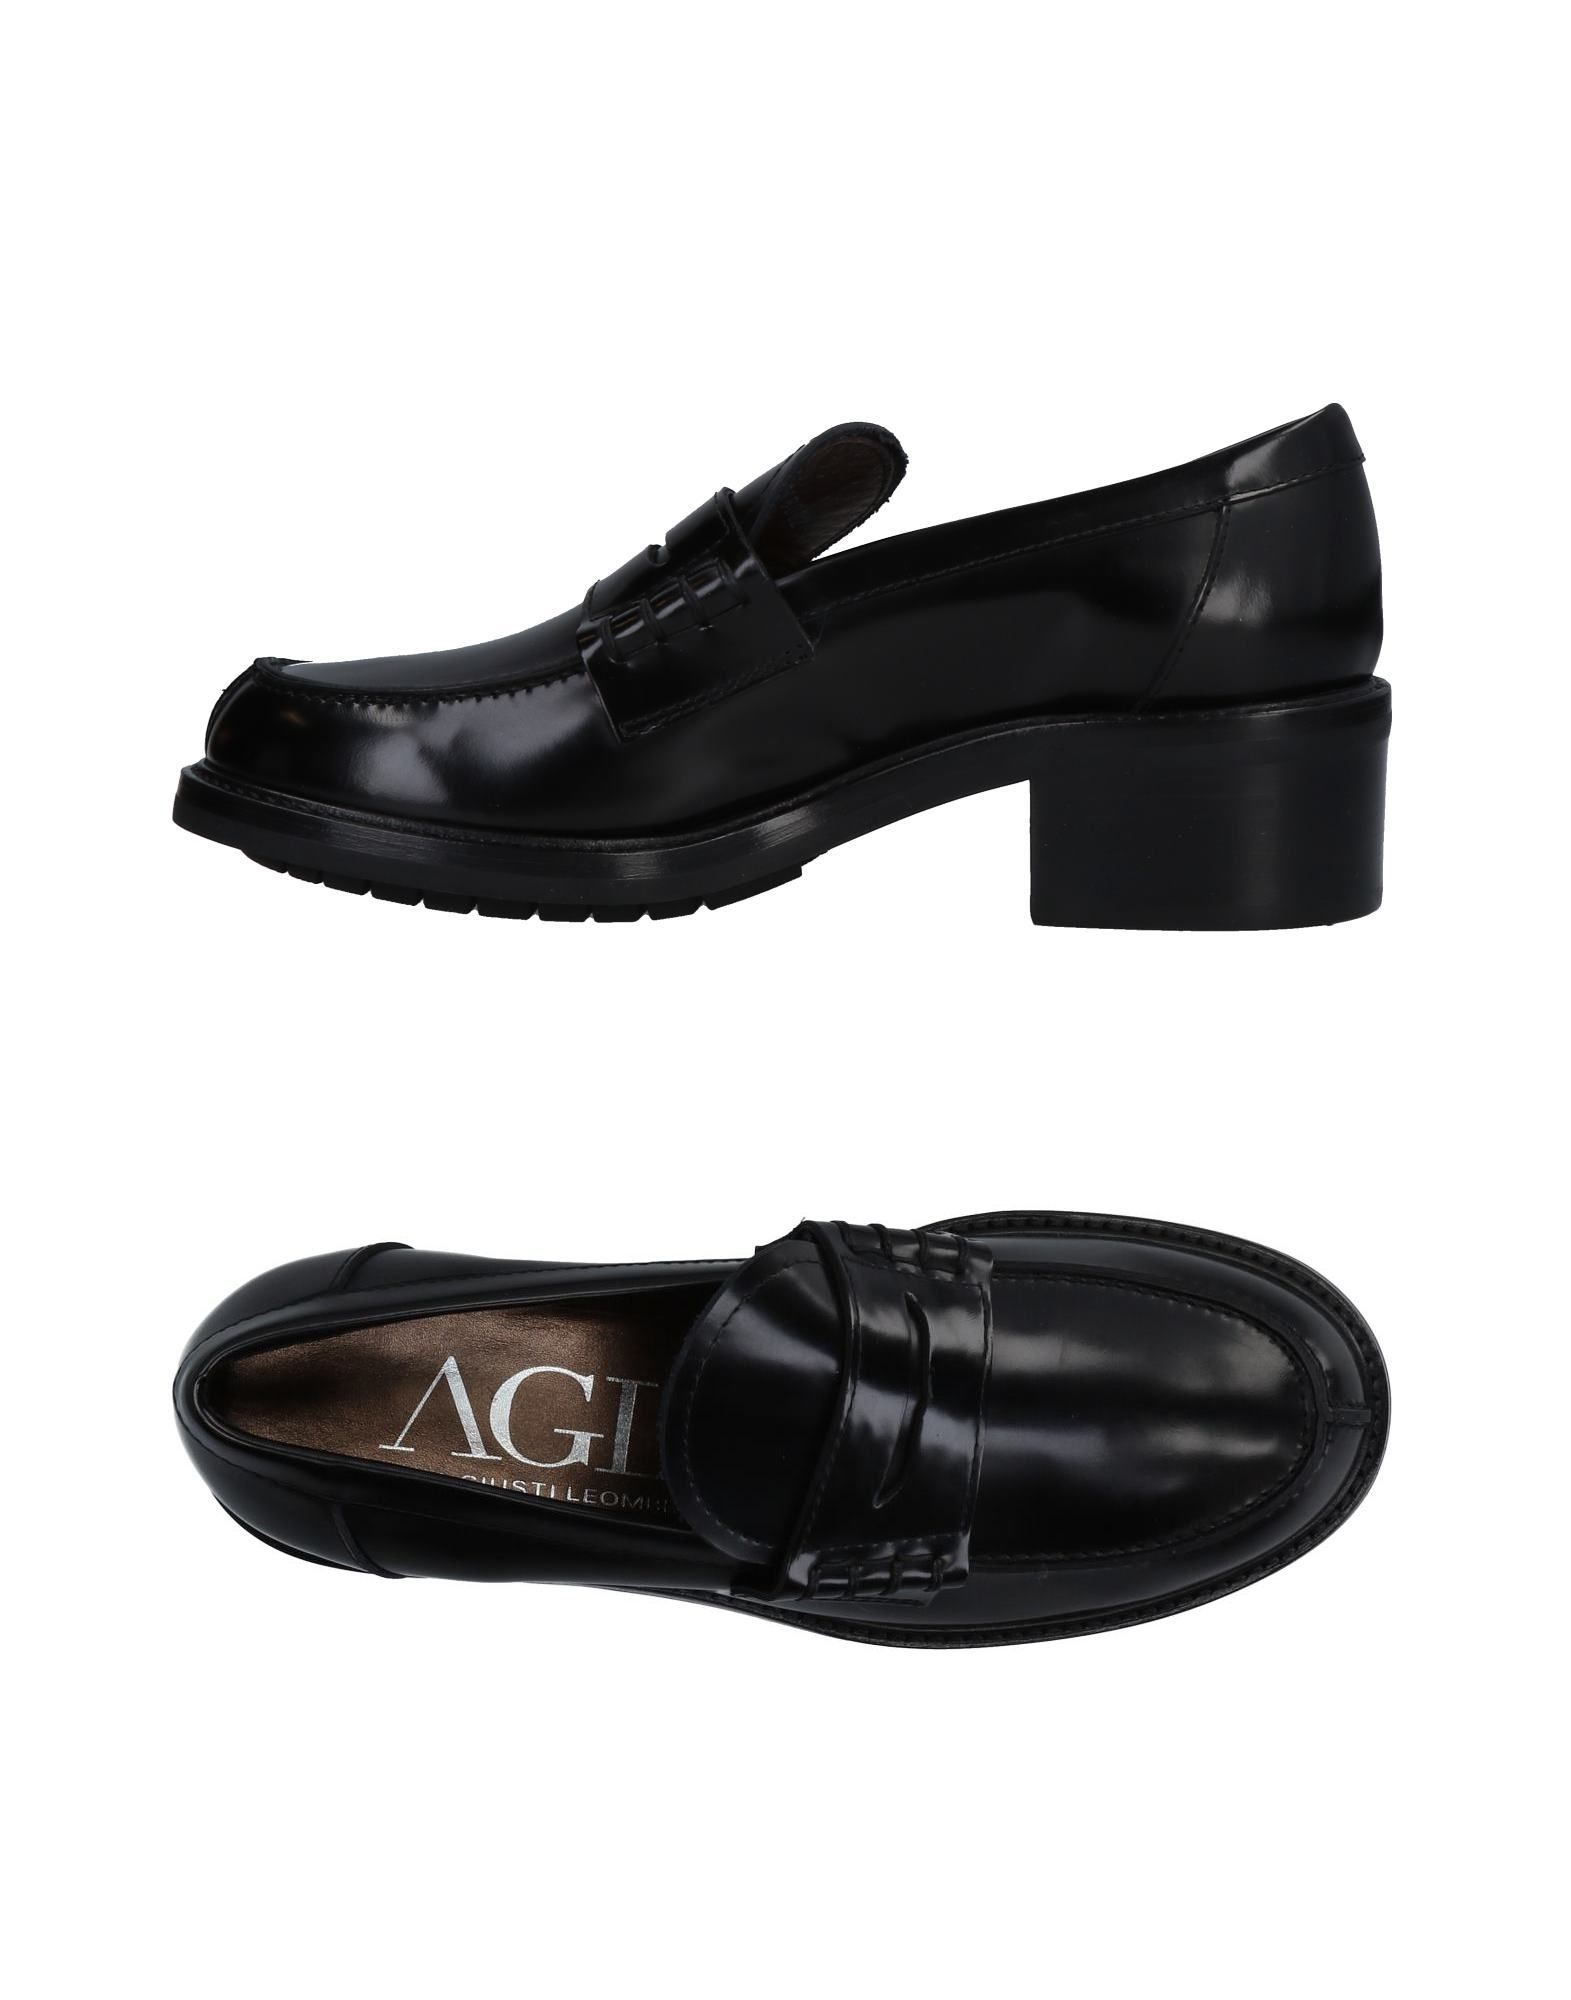 Agl обувь купить